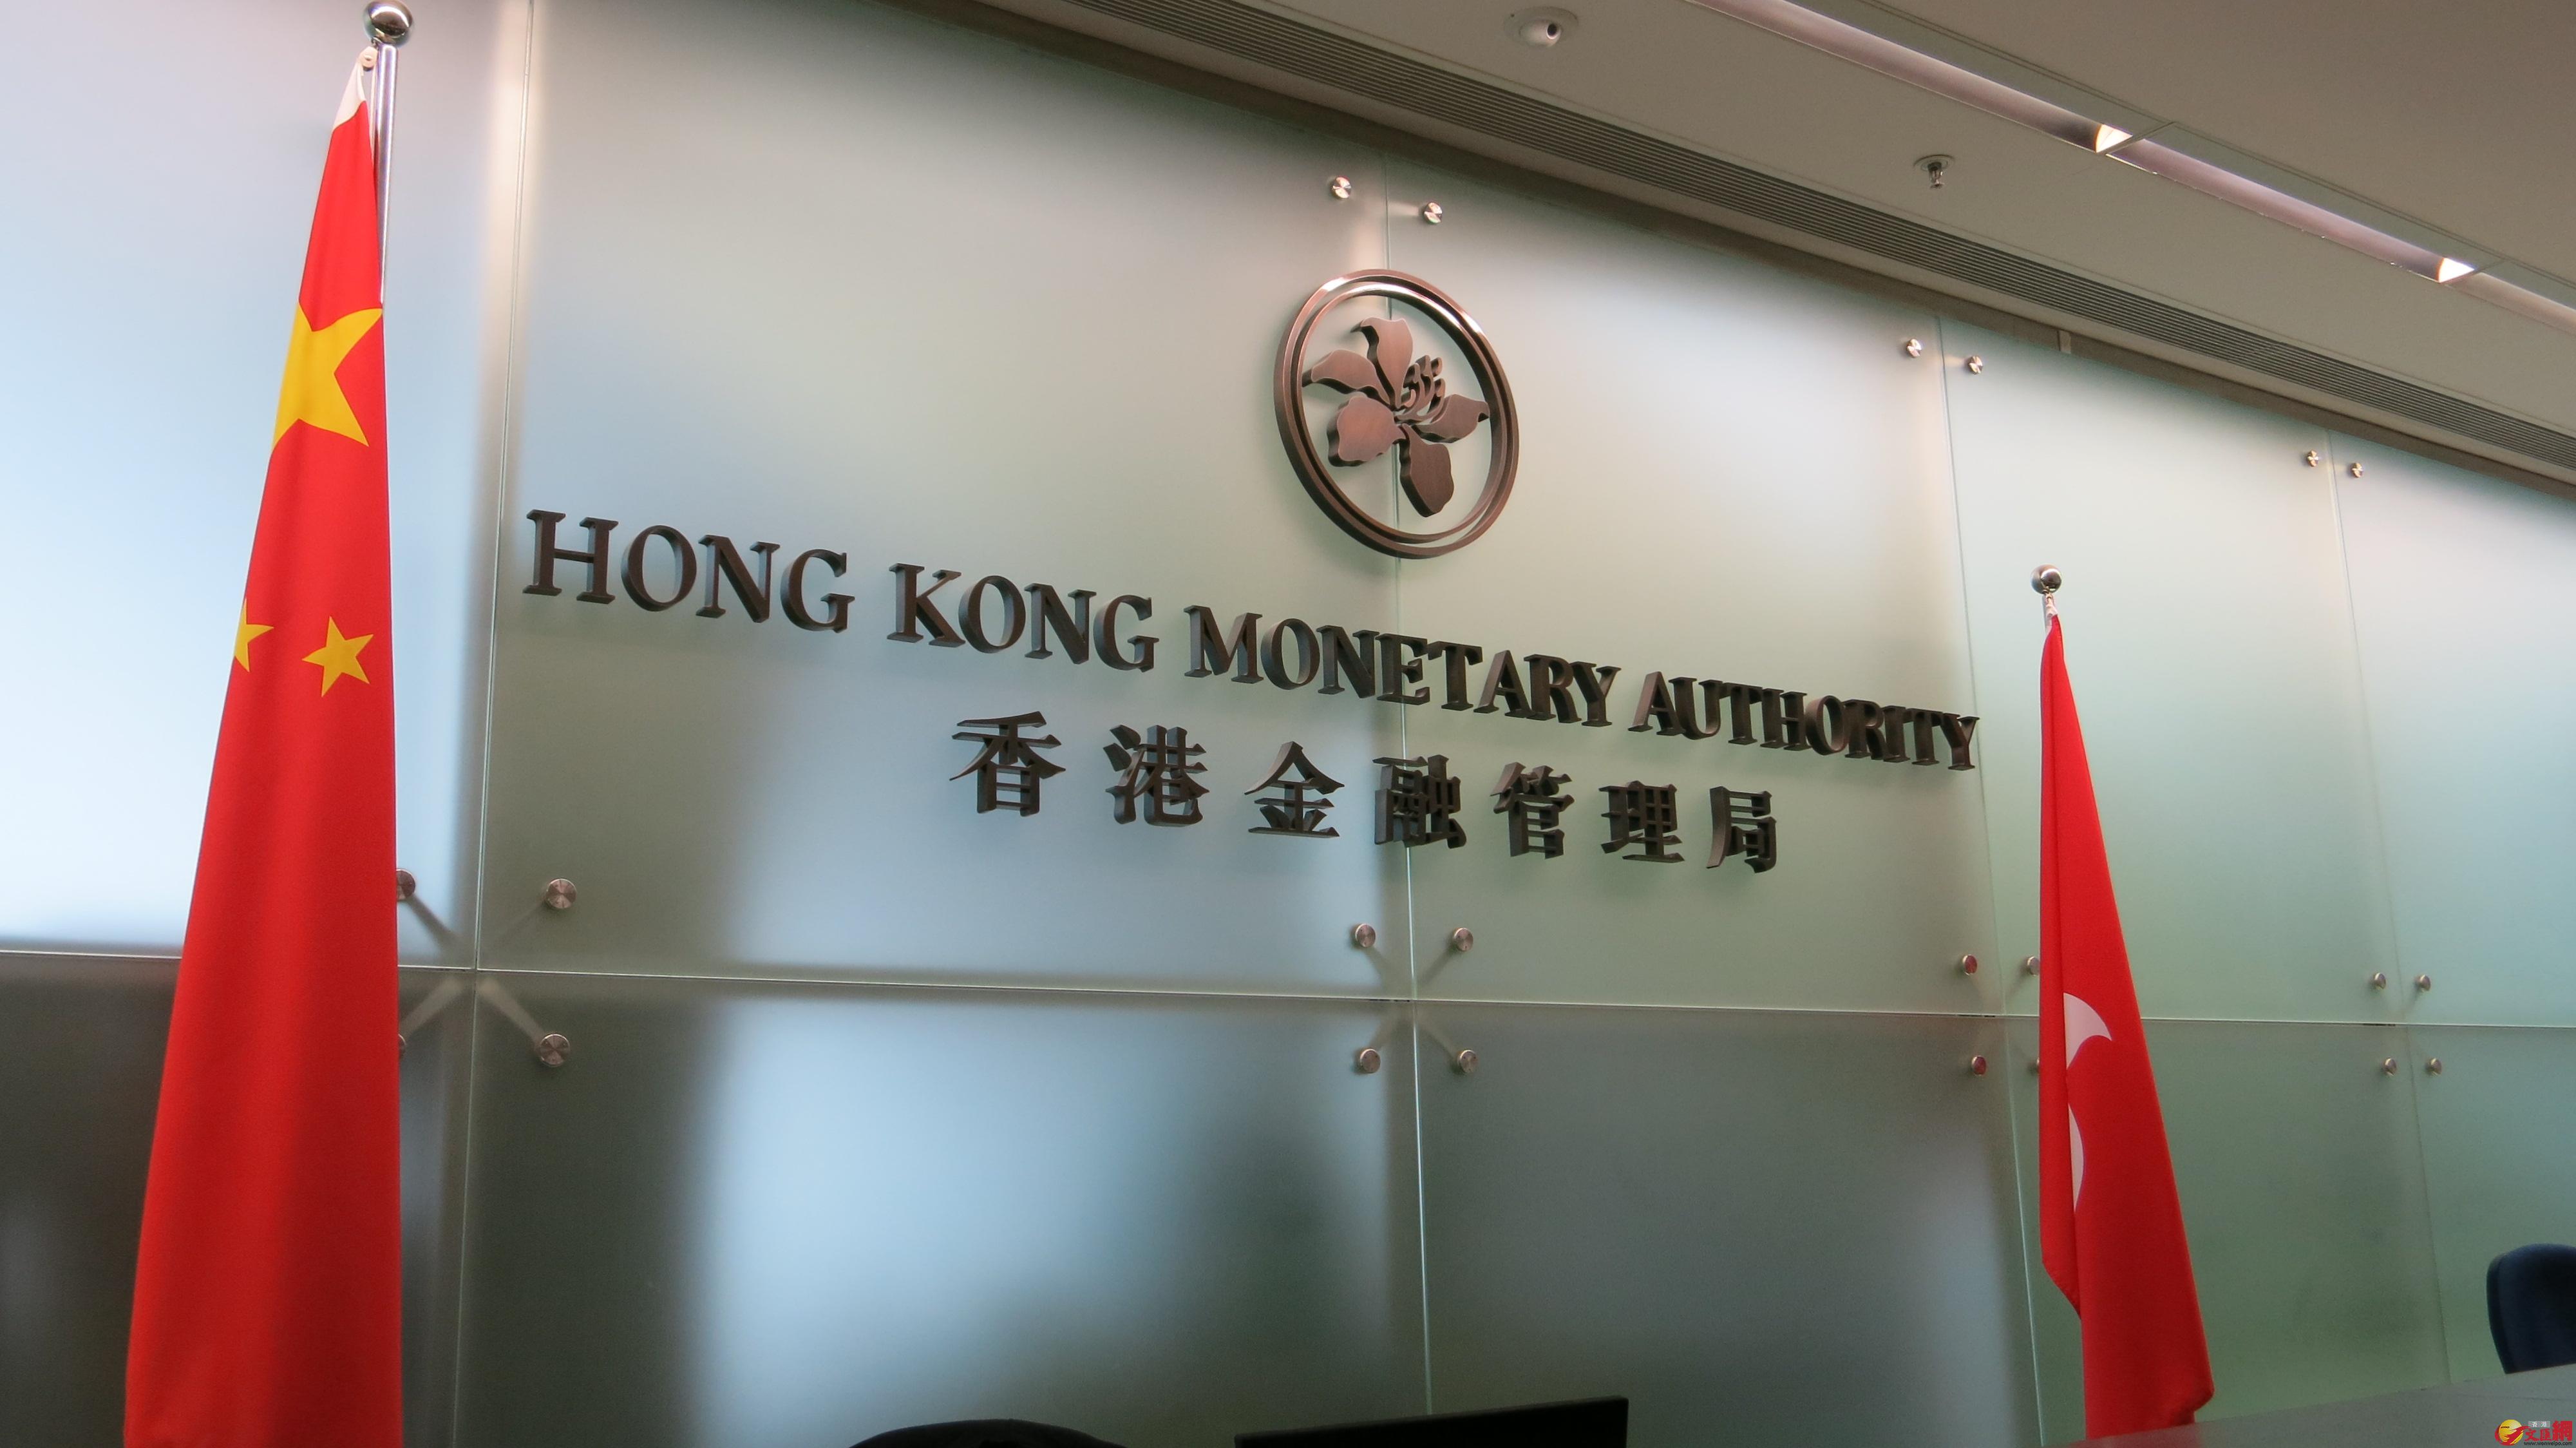 港府表示欢迎「债券通」建立。图为香港金管局